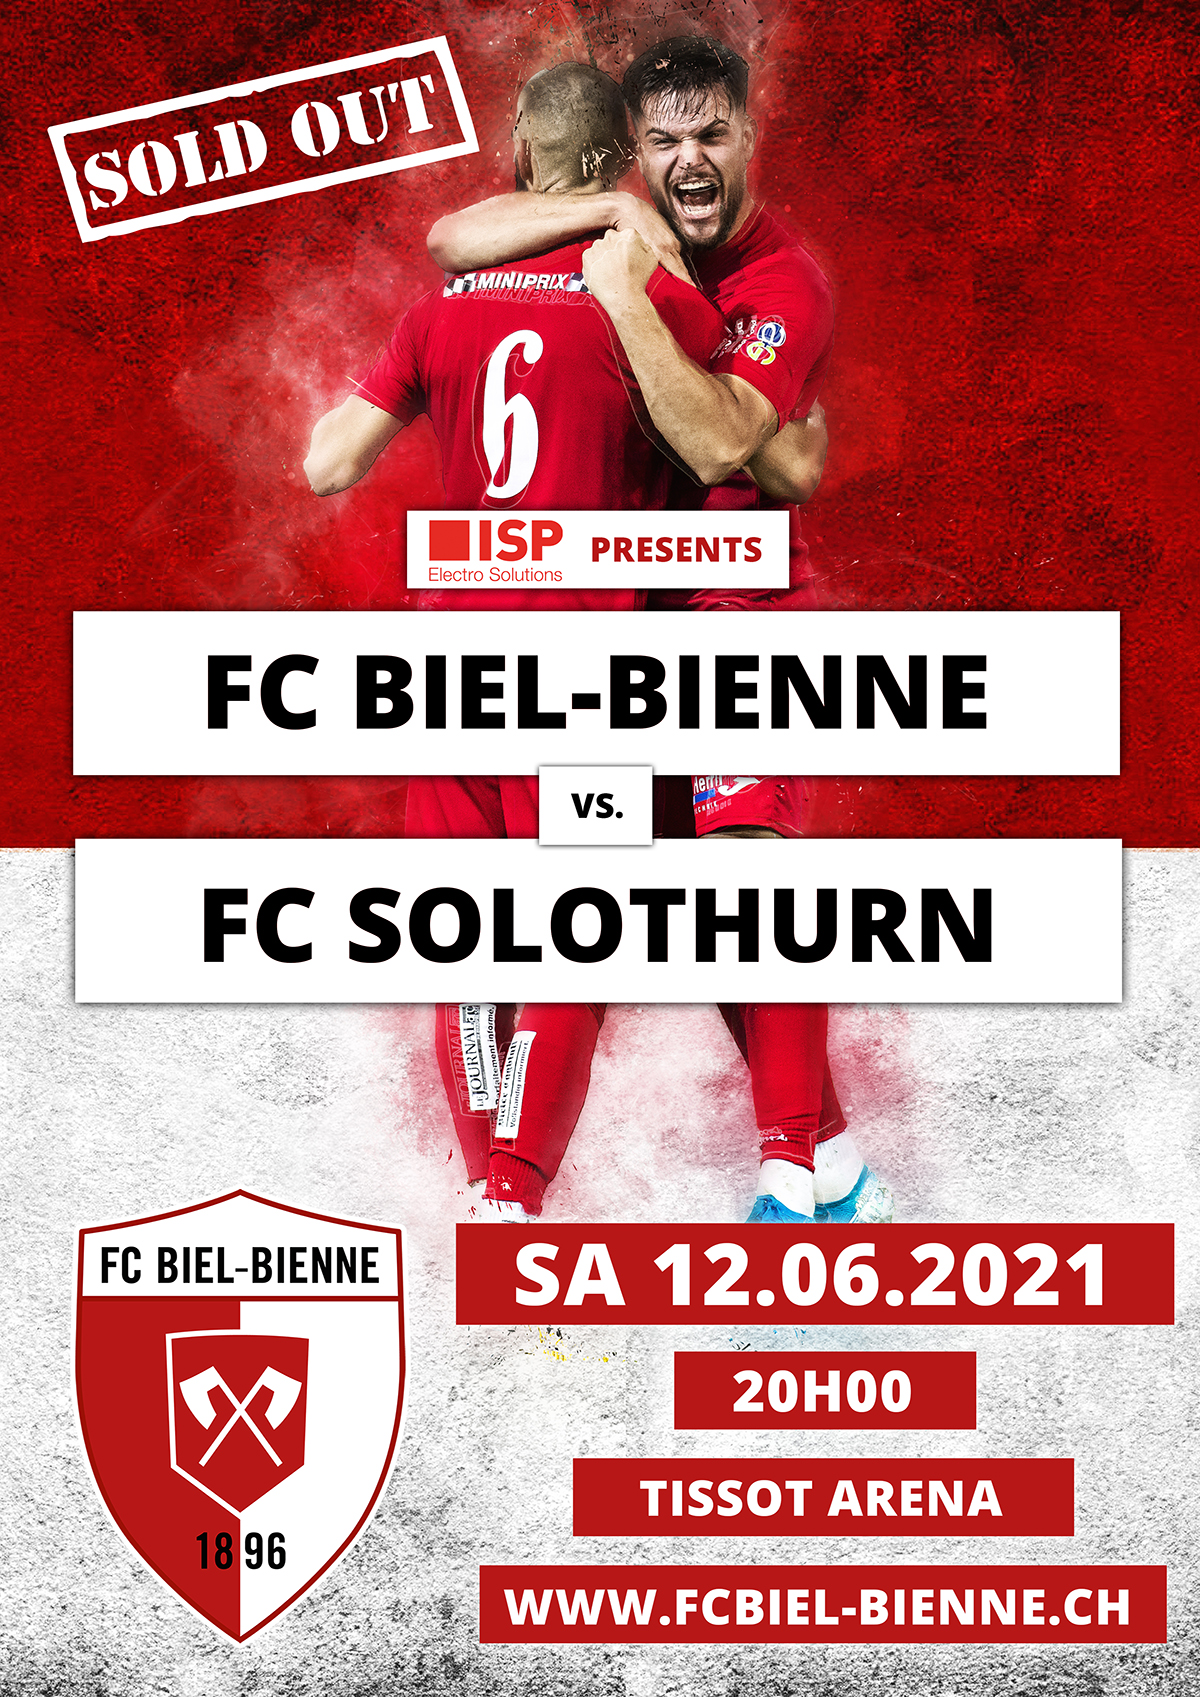 FC Biel-Bienne vs. FC Solothurn